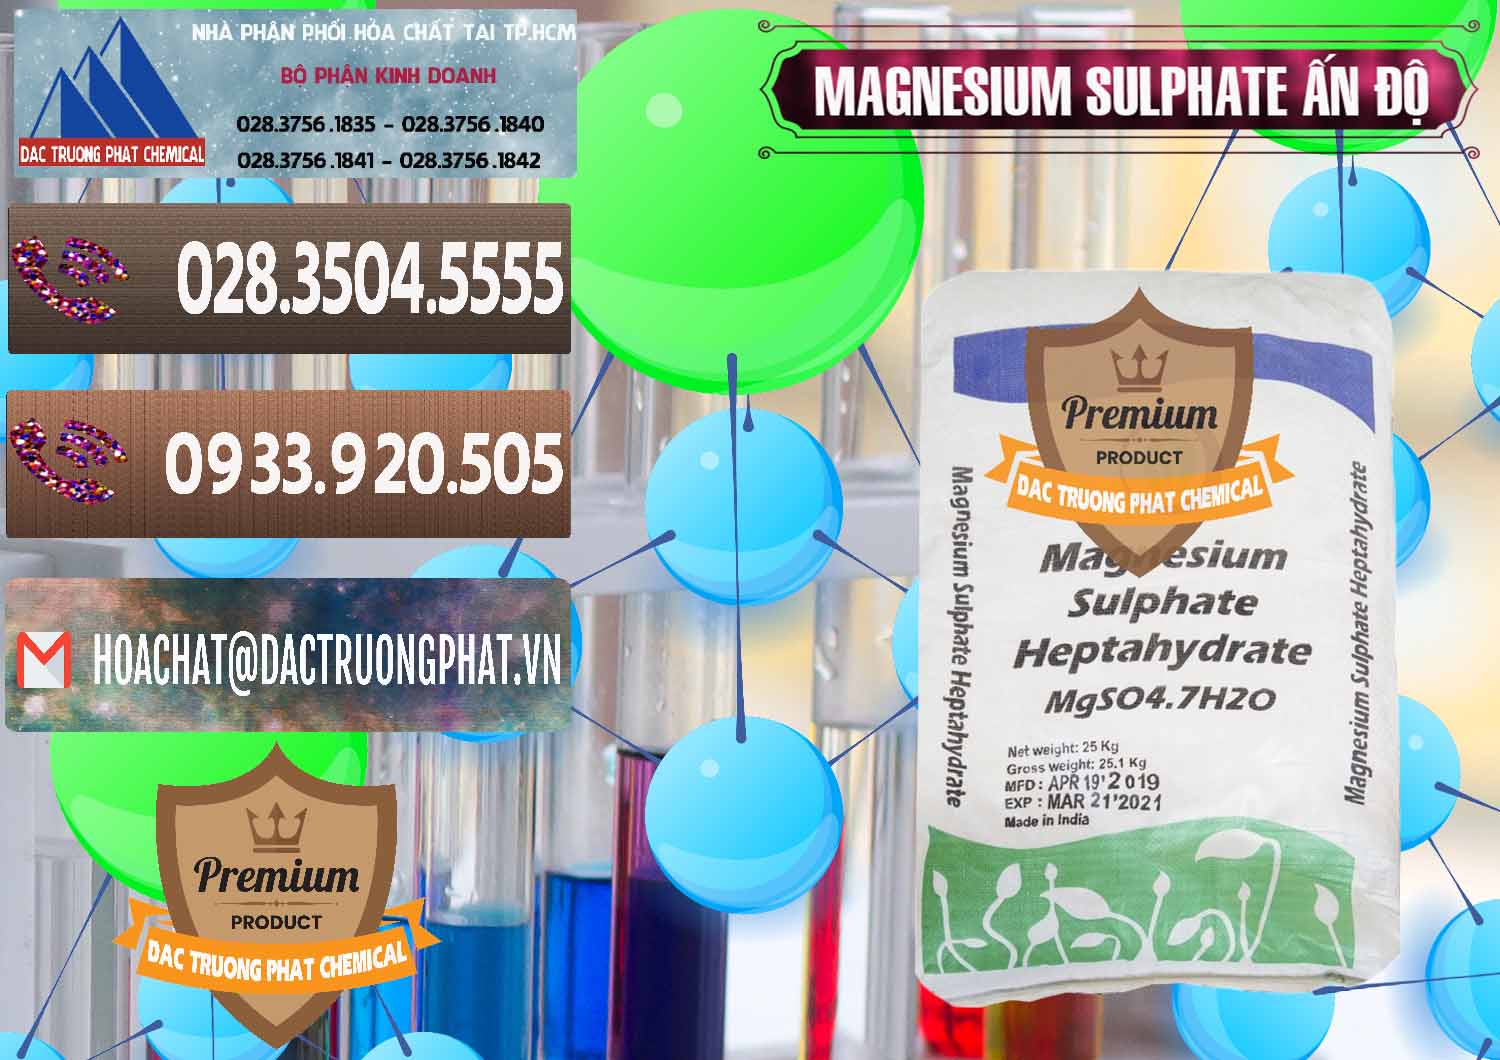 Nơi bán & phân phối MGSO4.7H2O – Magnesium Sulphate Heptahydrate Ấn Độ India - 0362 - Nhà phân phối & cung cấp hóa chất tại TP.HCM - hoachatviet.net